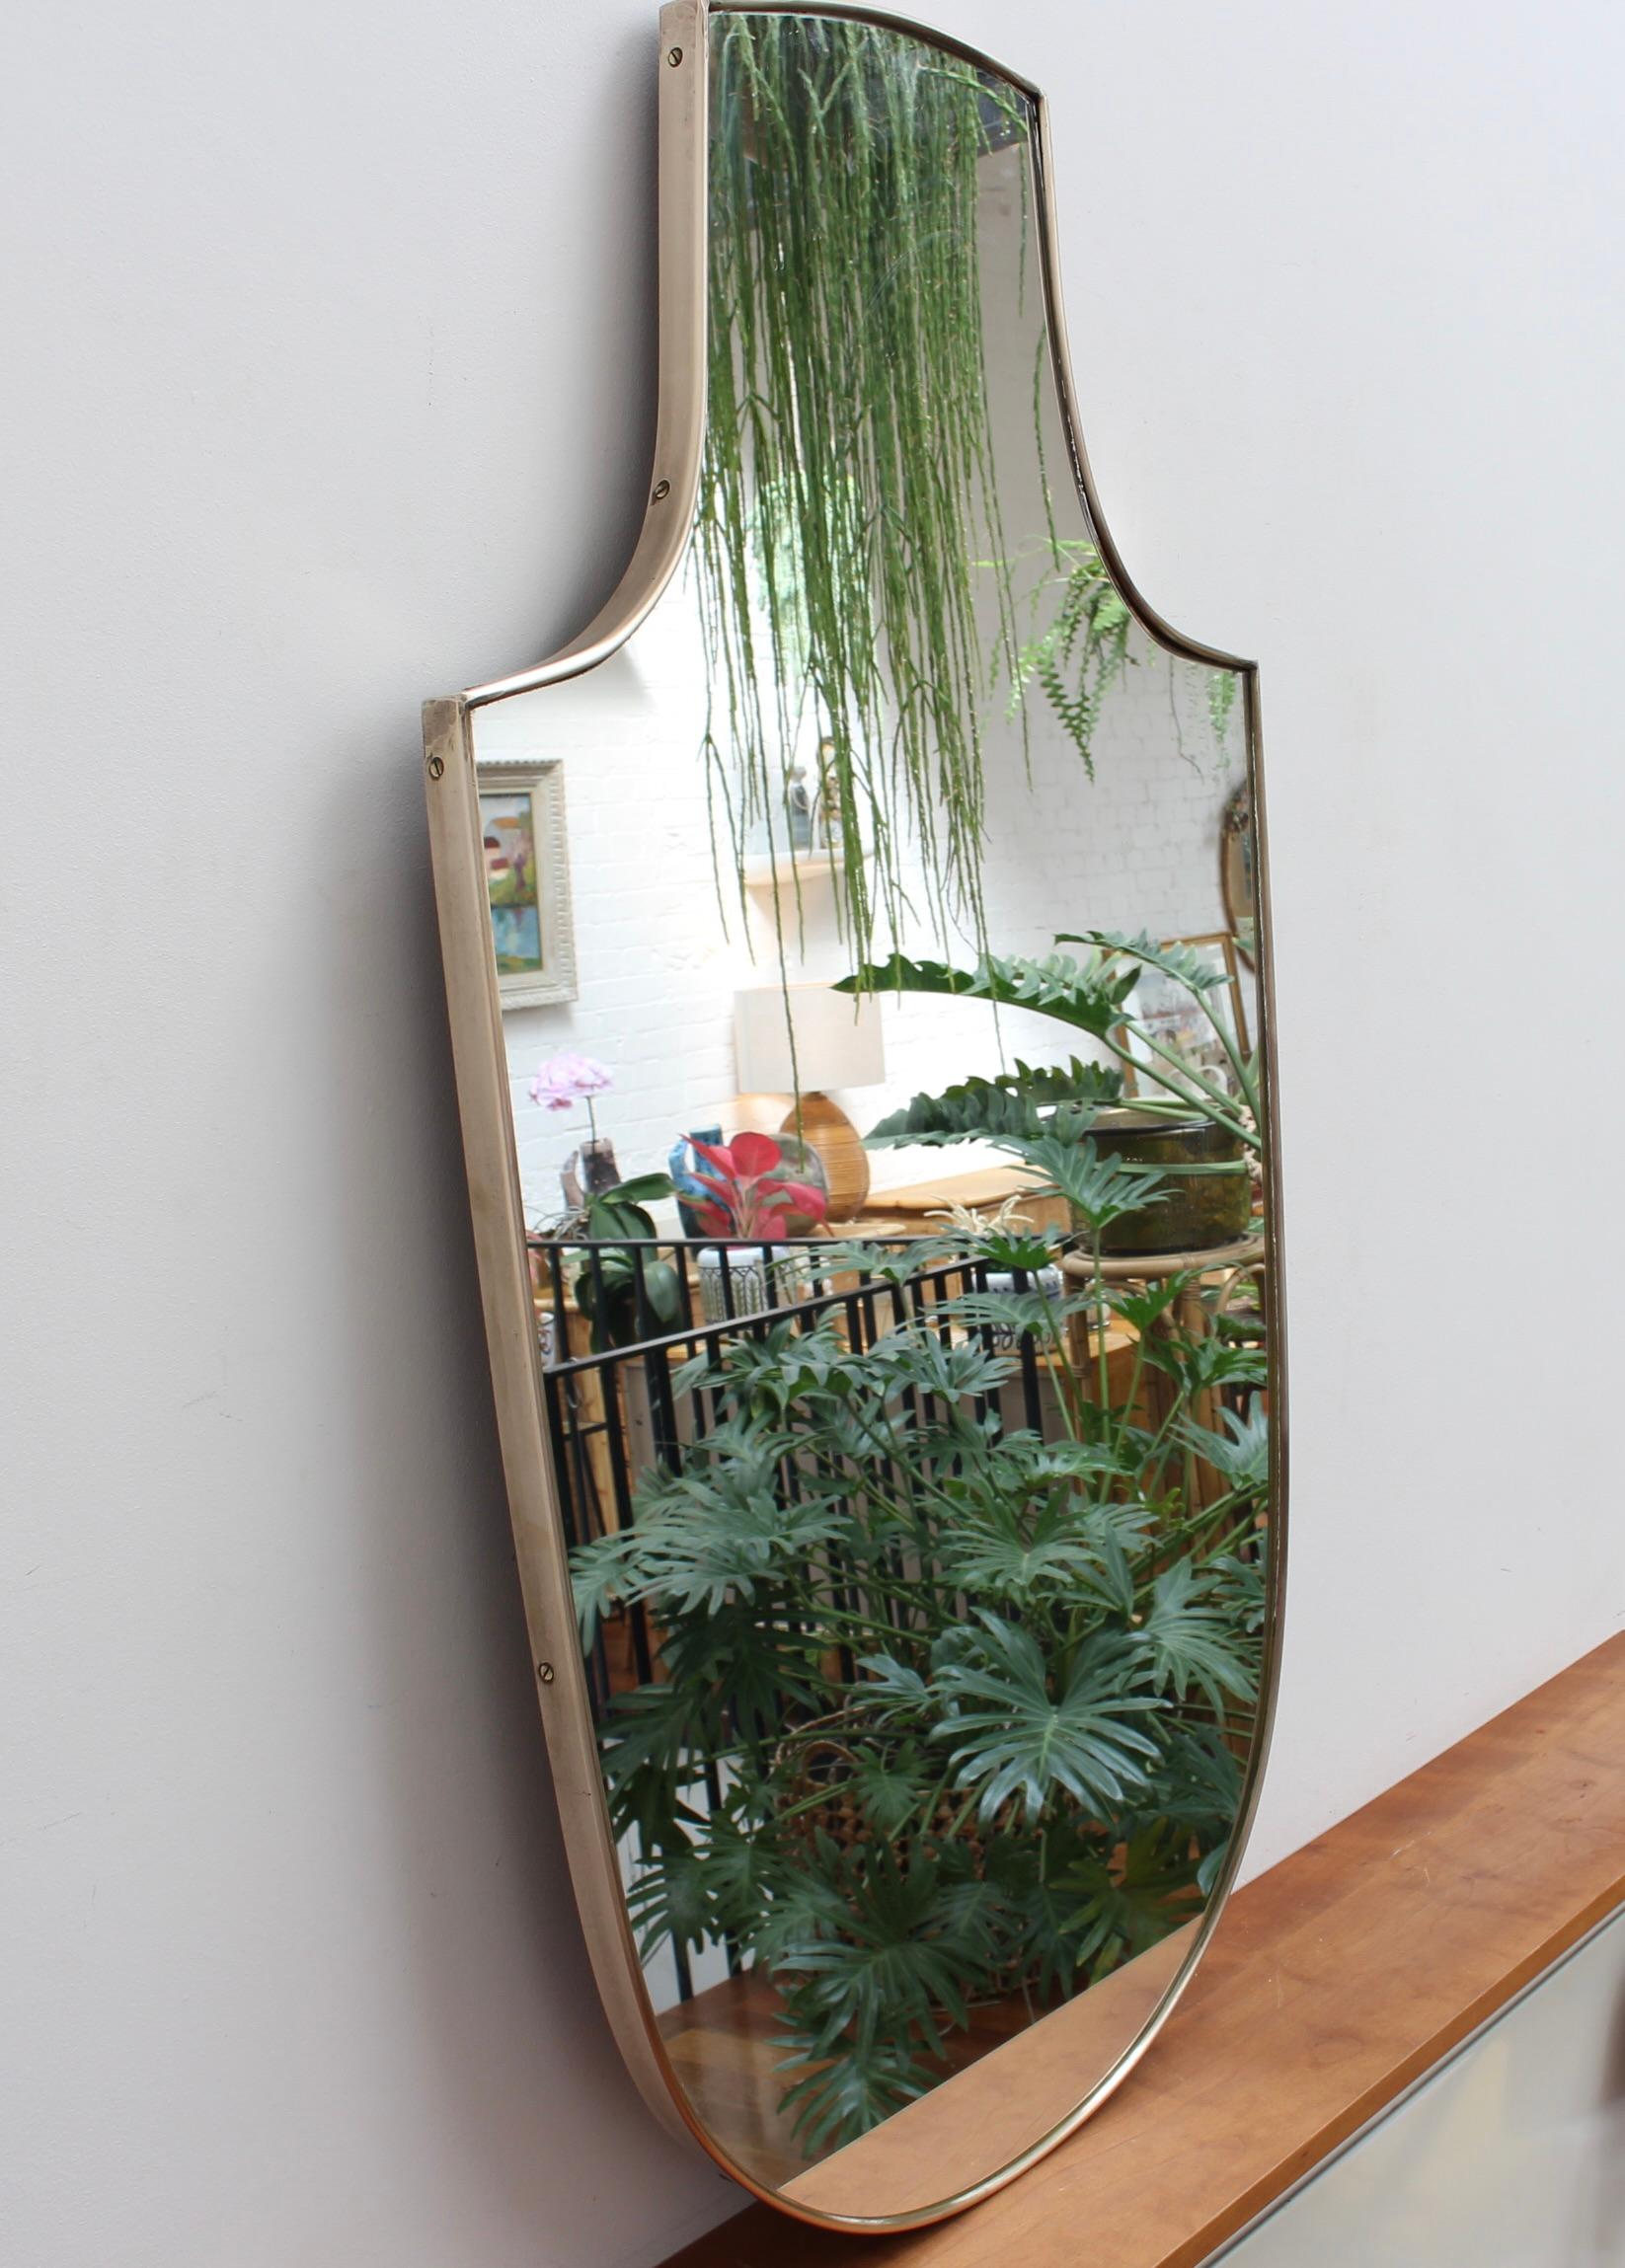 Italienischer Wandspiegel aus der Mitte des Jahrhunderts mit Messingrahmen (ca. 1950). Der Spiegel ist klassisch geformt und zeichnet sich durch einen modernen Stil aus. Es ist in gutem Gesamtzustand mit nur einem kleinen Schönheitsfehler auf dem